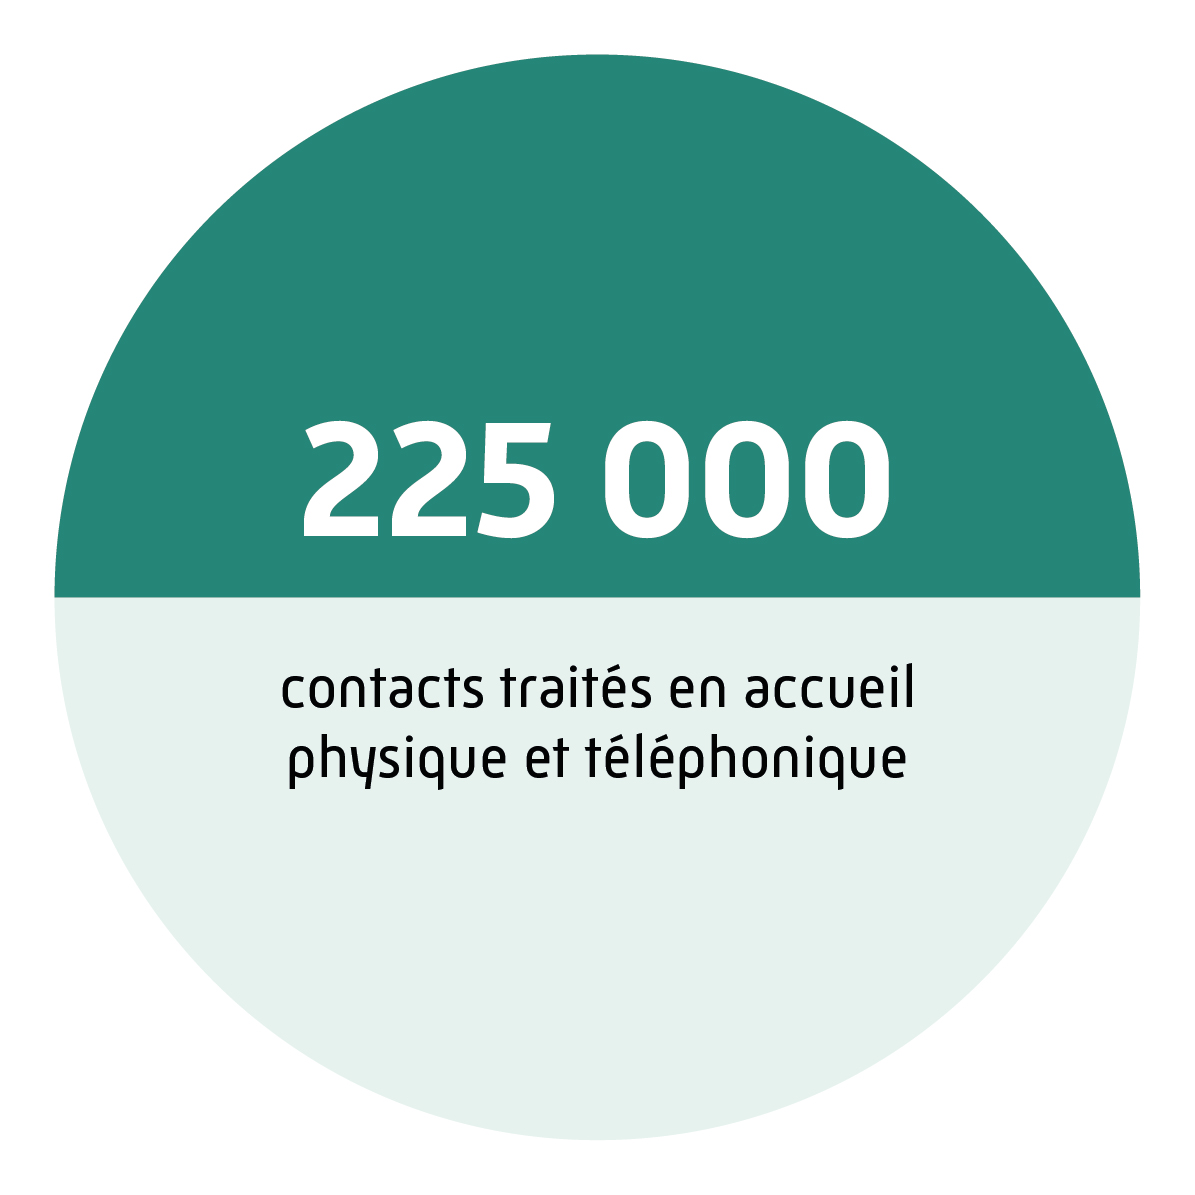 225 000 contacts traités en accueil physique et téléphonique.